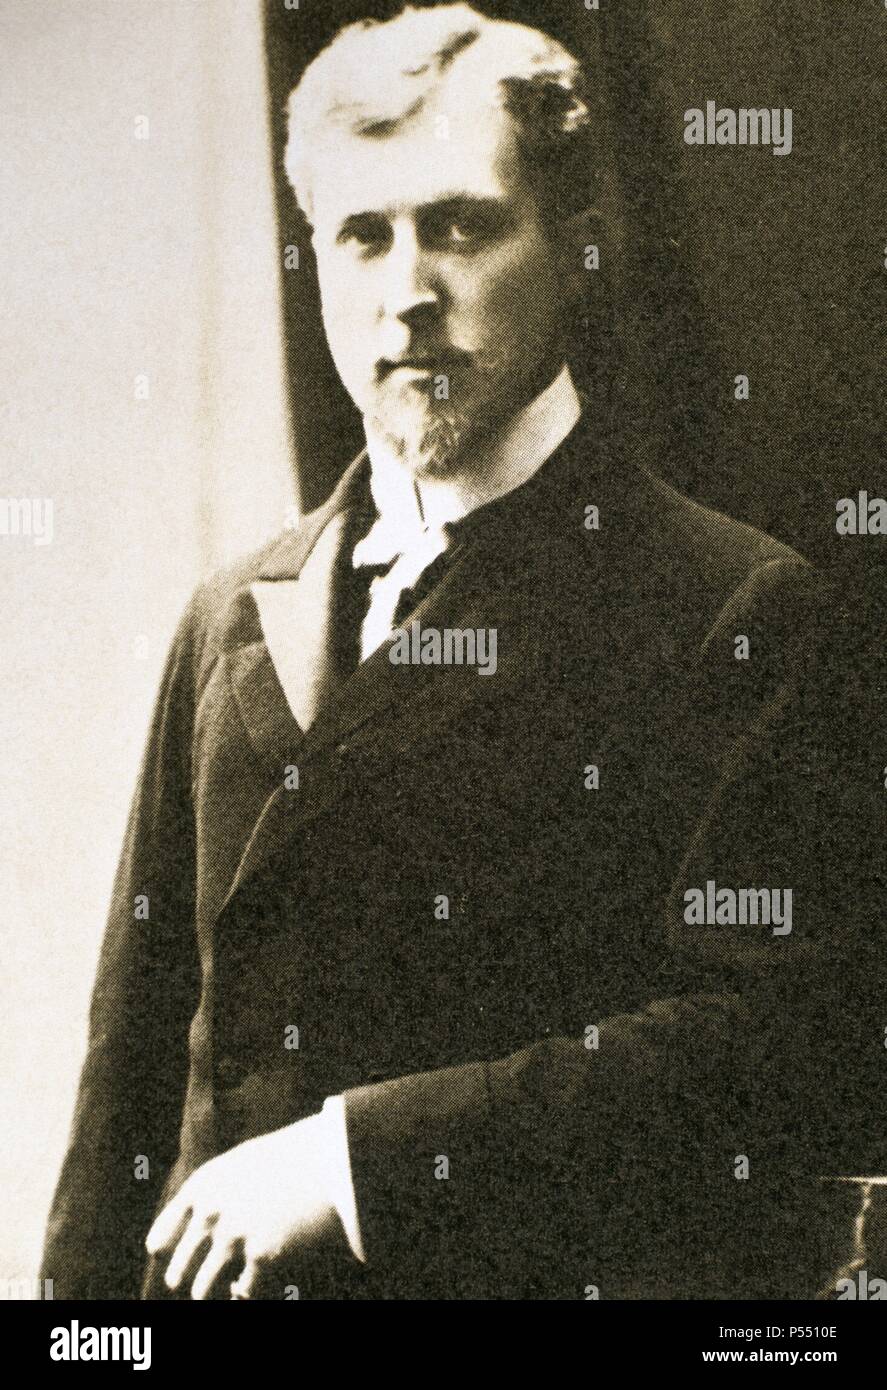 ALBERTO I (Bruselas 1875-Marche-les-Dames 1934). Rey de Bélgica (1909-34) sucesor de Leopoldo II. Durante la I Guerra Mundial estuvo al frente del ejército. El 17 de febrero de 1934 murió escalando Marcheles-Dames. Stock Photo